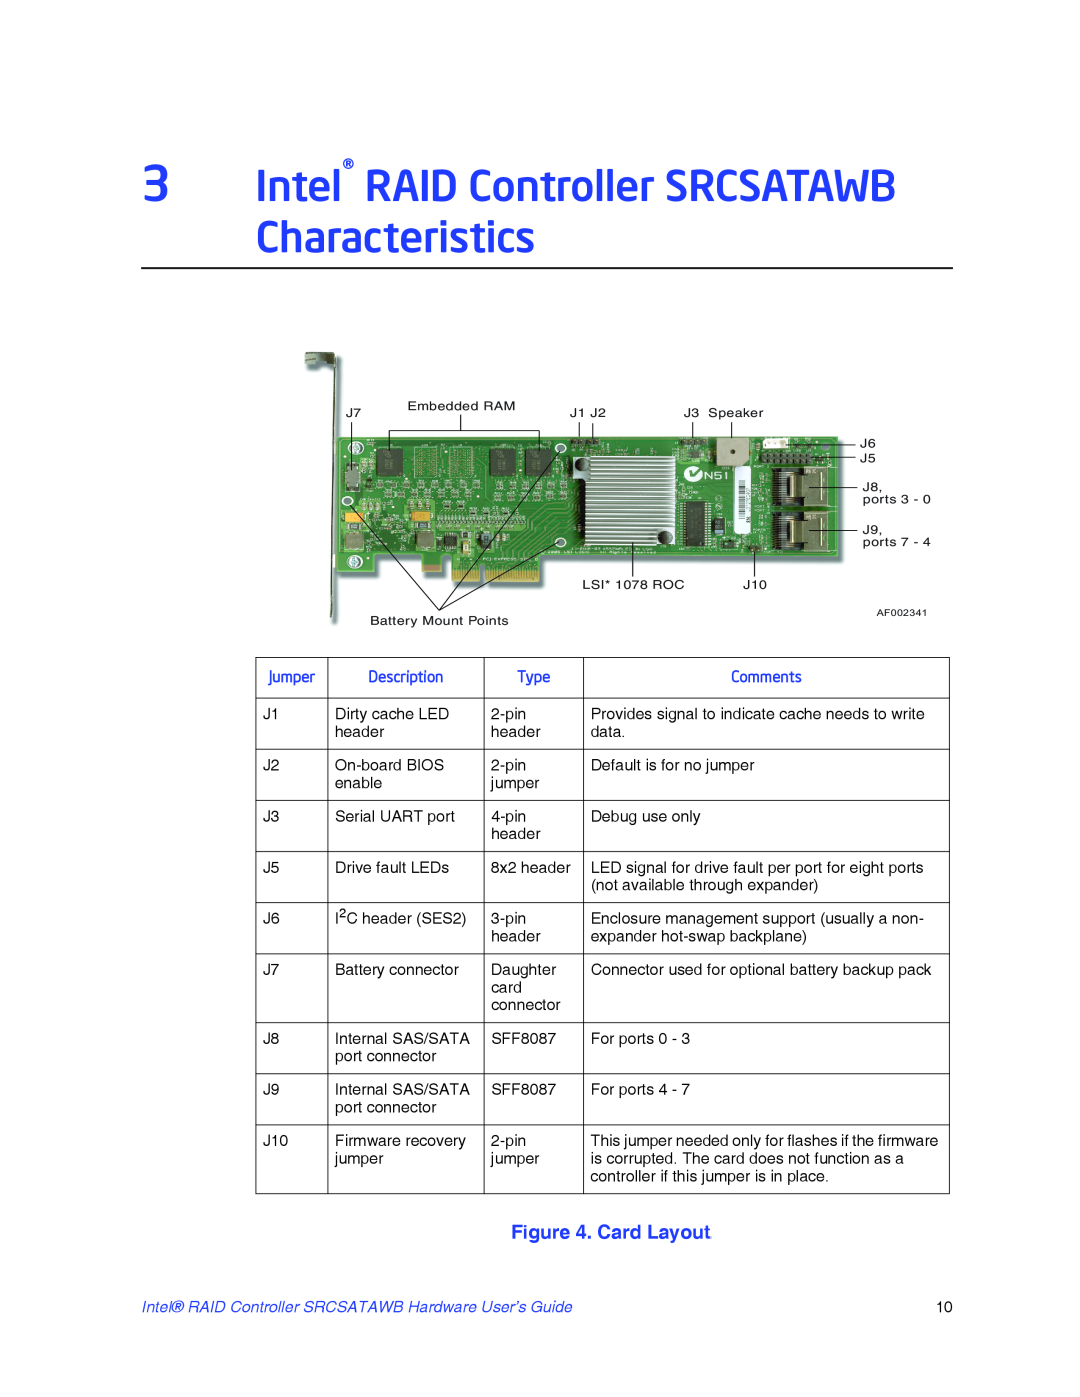 Intel manual 3Intel RAID Controller SRCSATAWB Characteristics, Card Layouts, Jumper, Description, Type, Comments 